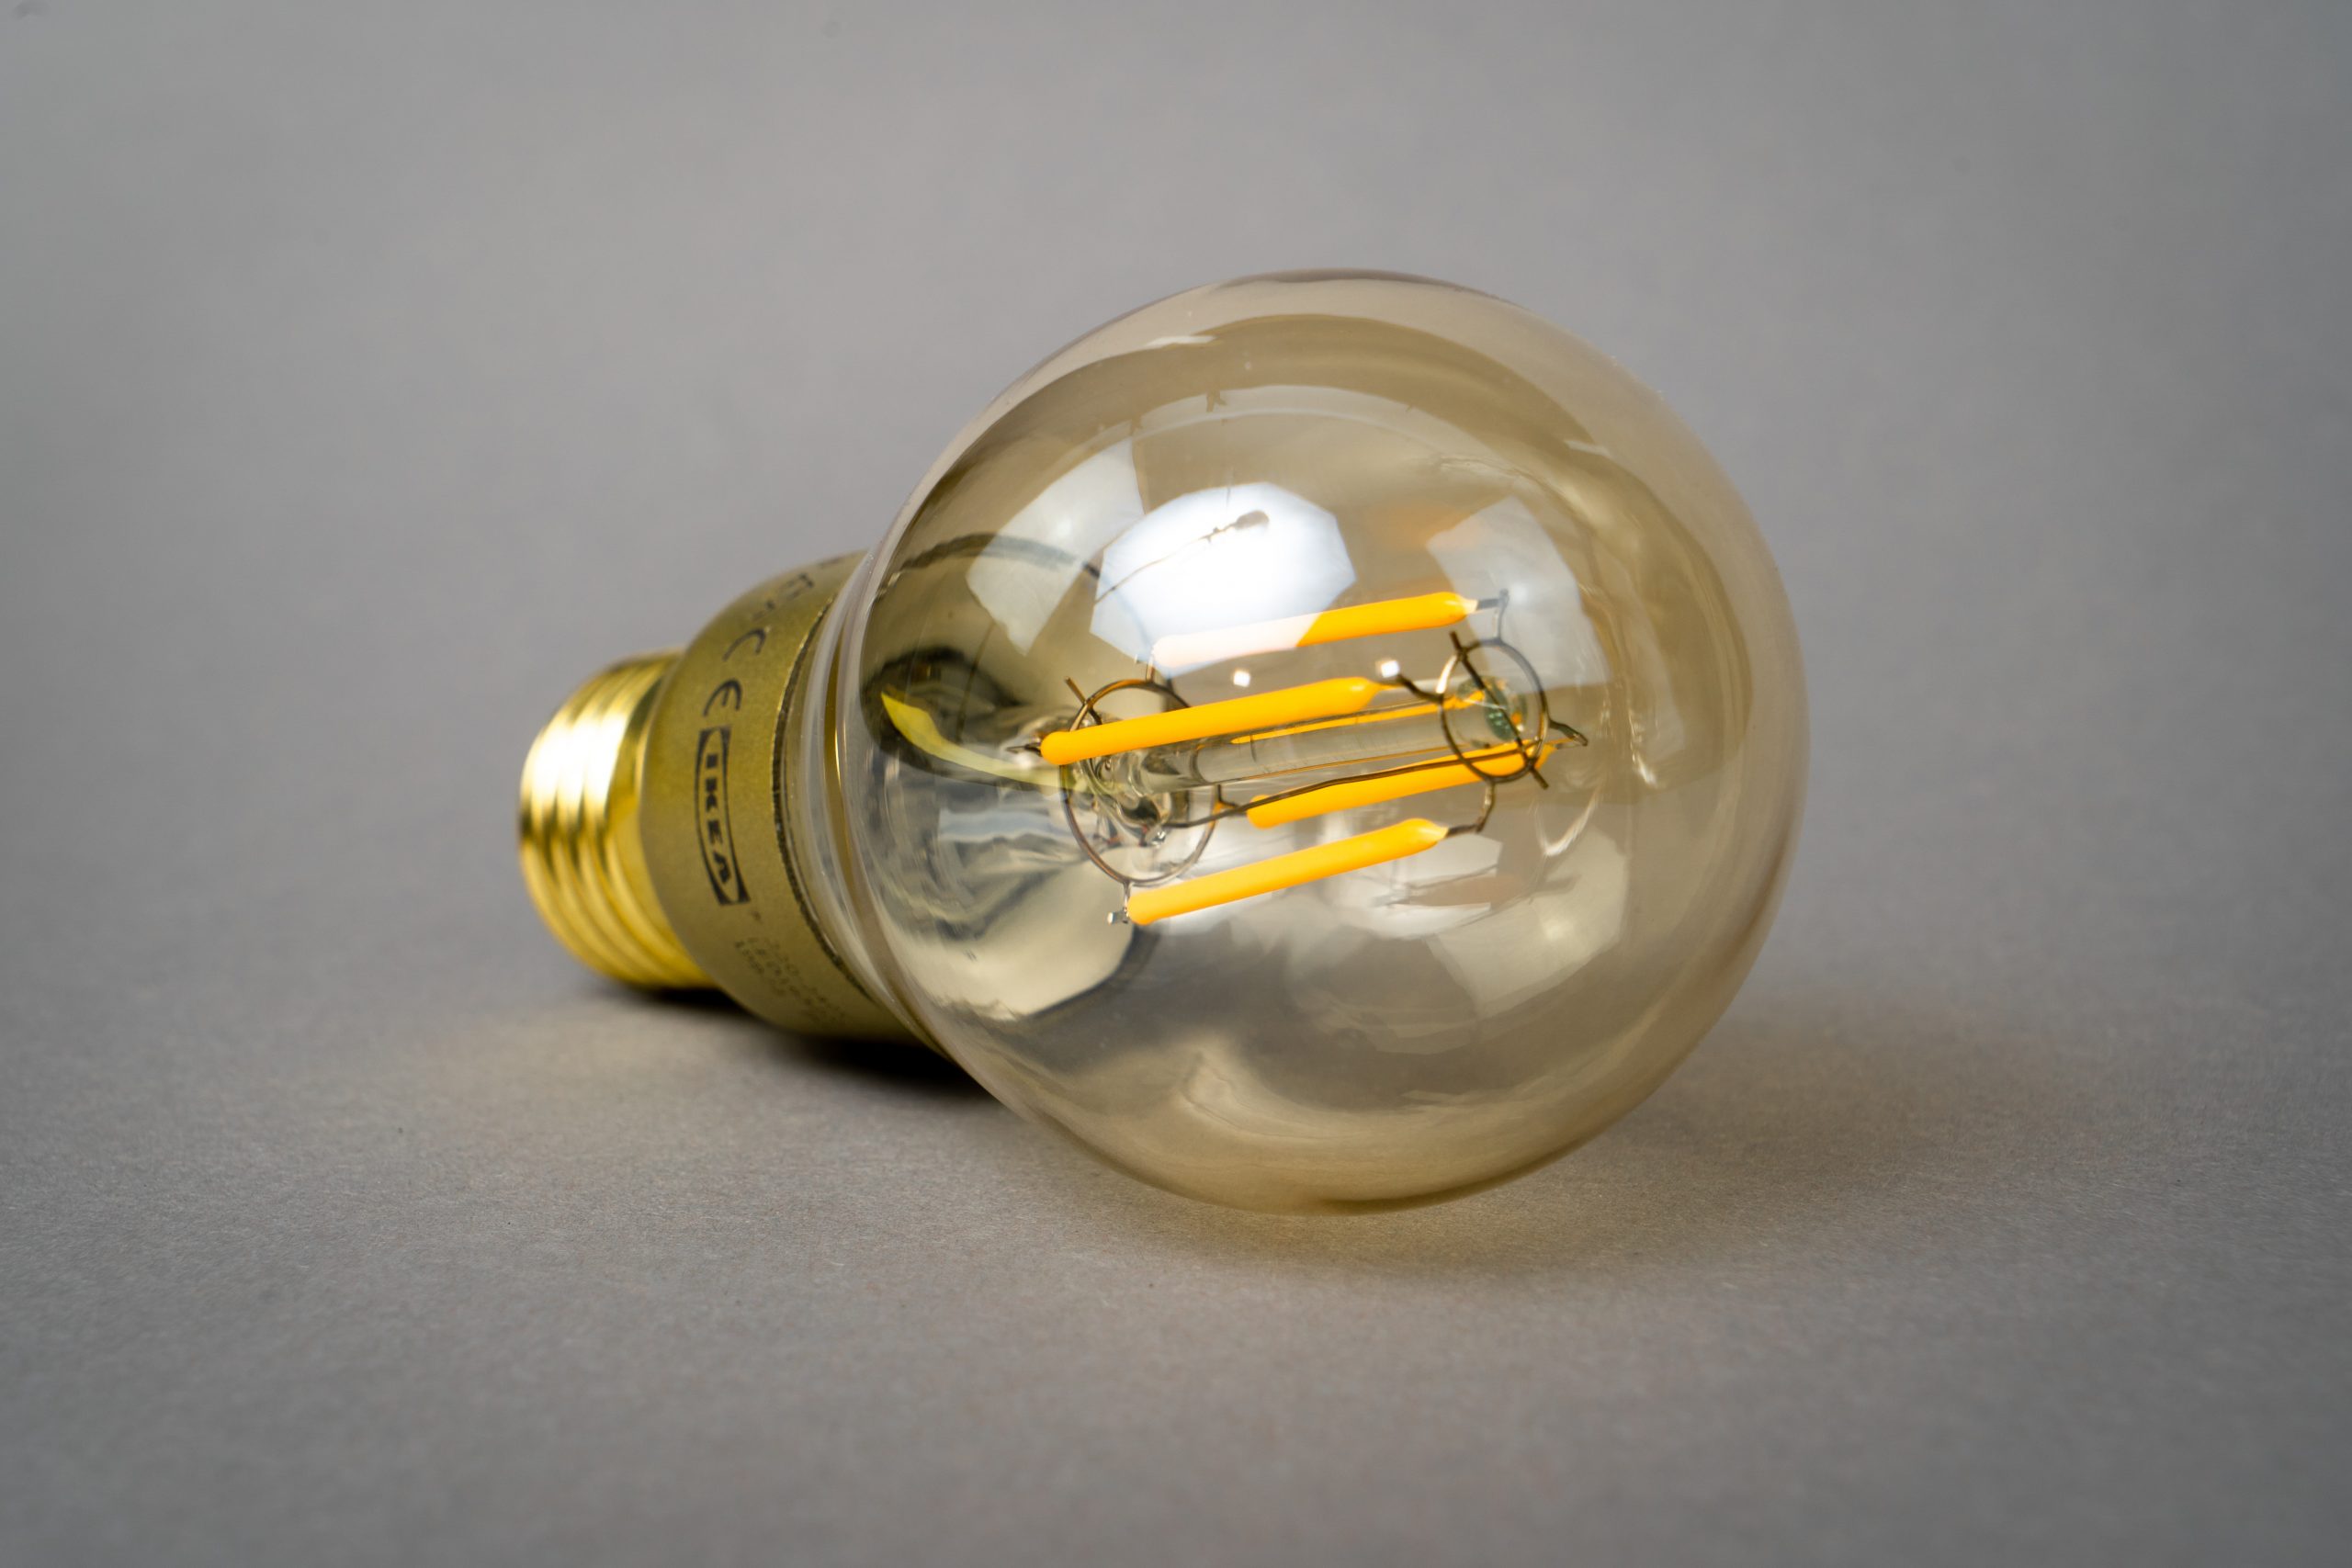 LED lamp for energy efficient lighting